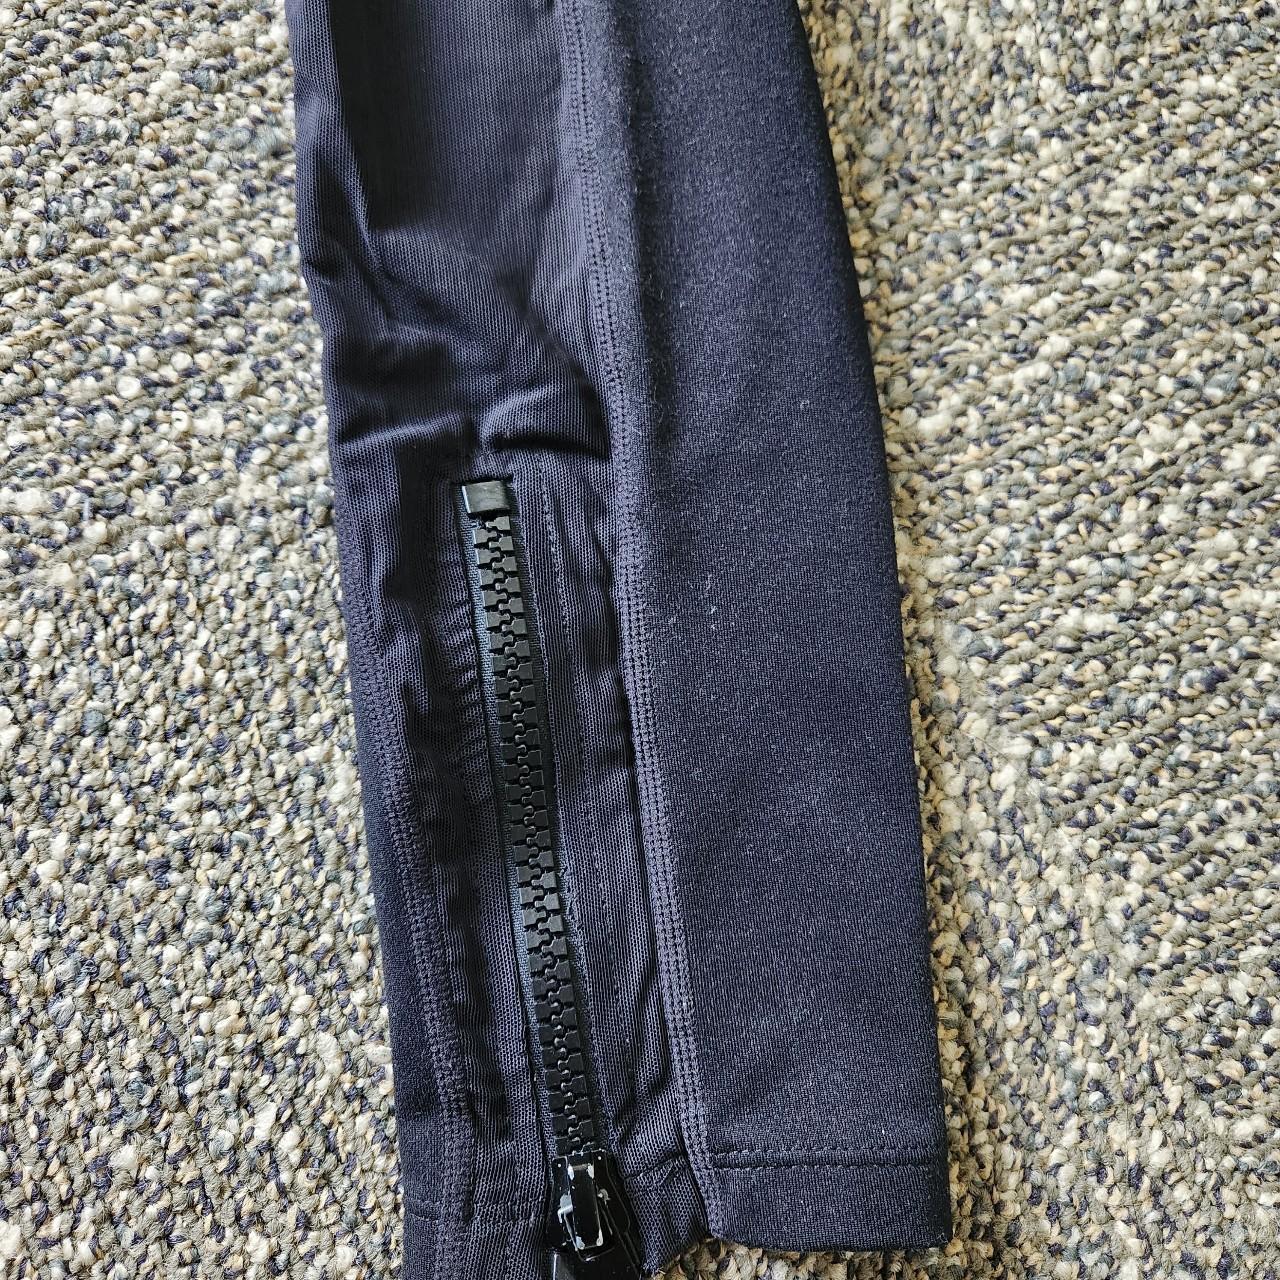 Popflex black leggings, developed by Cassey Ho - Depop